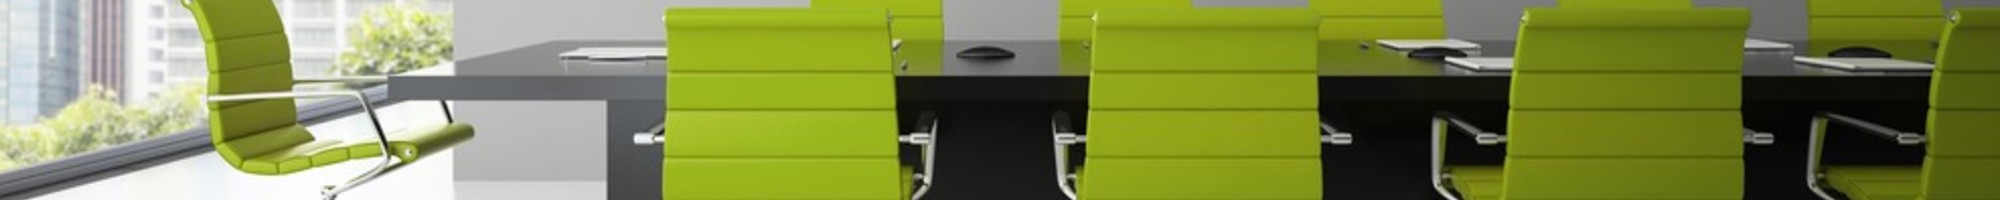 Desk Chair Green2